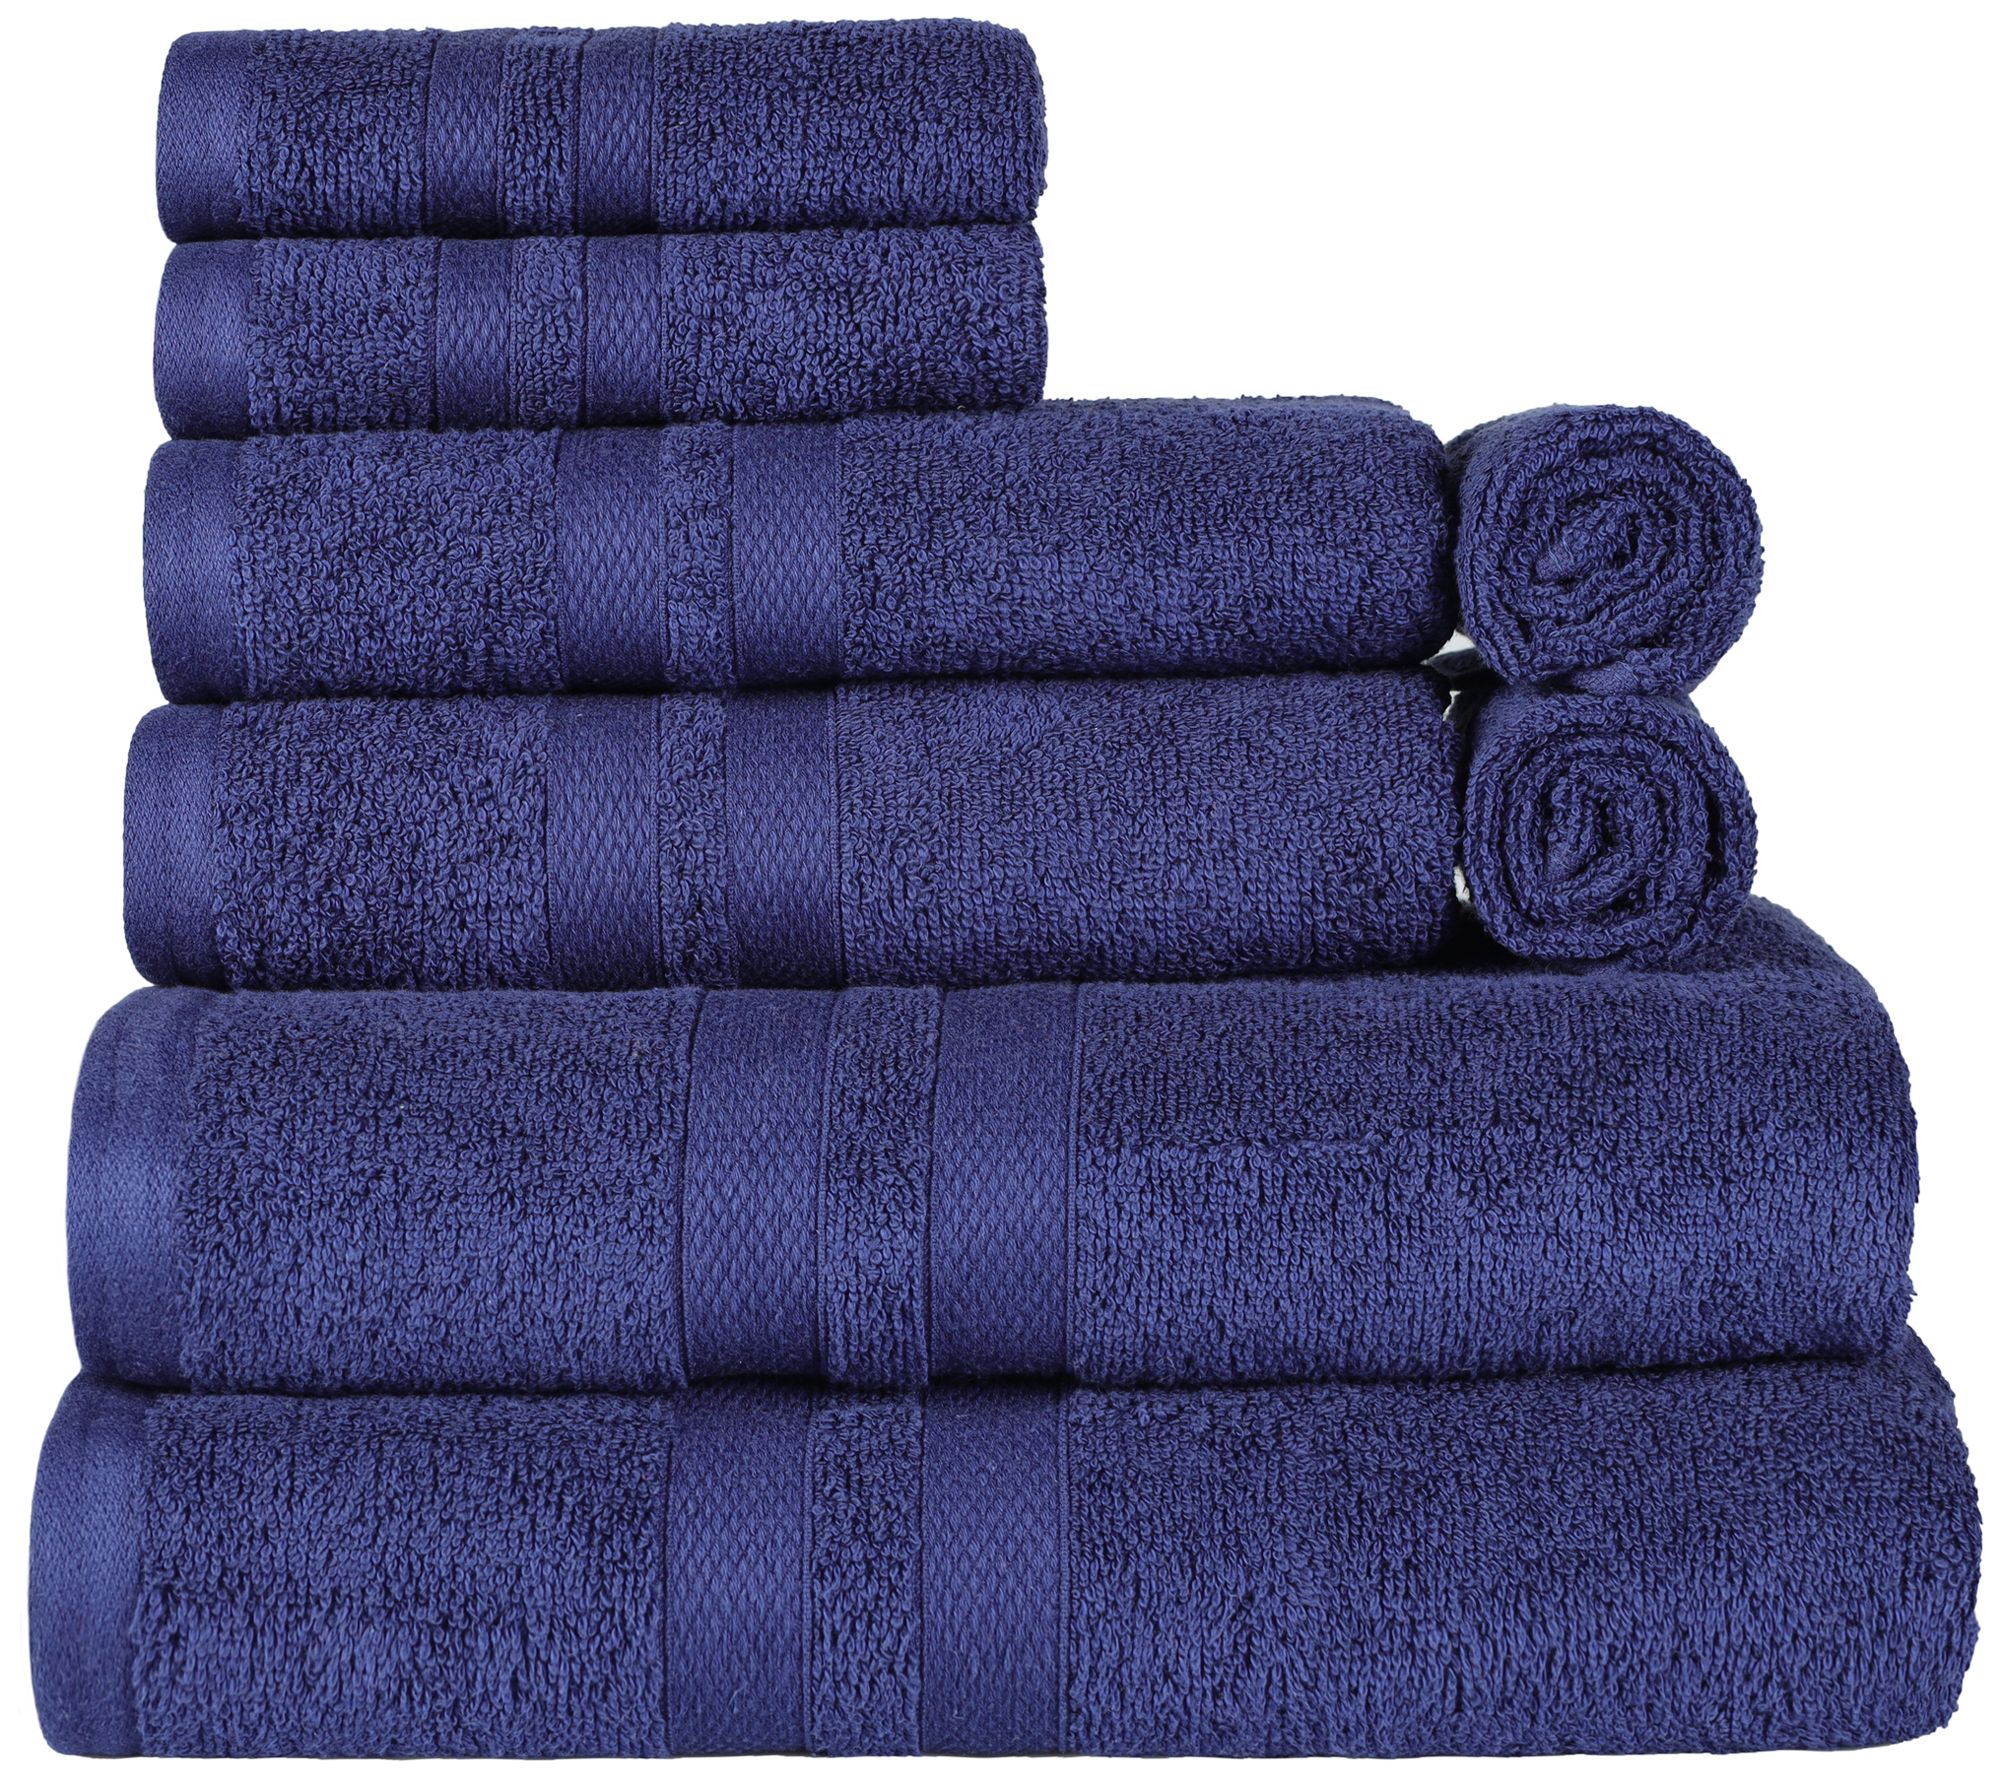 8pc Cotton Bath Towel Set Purple